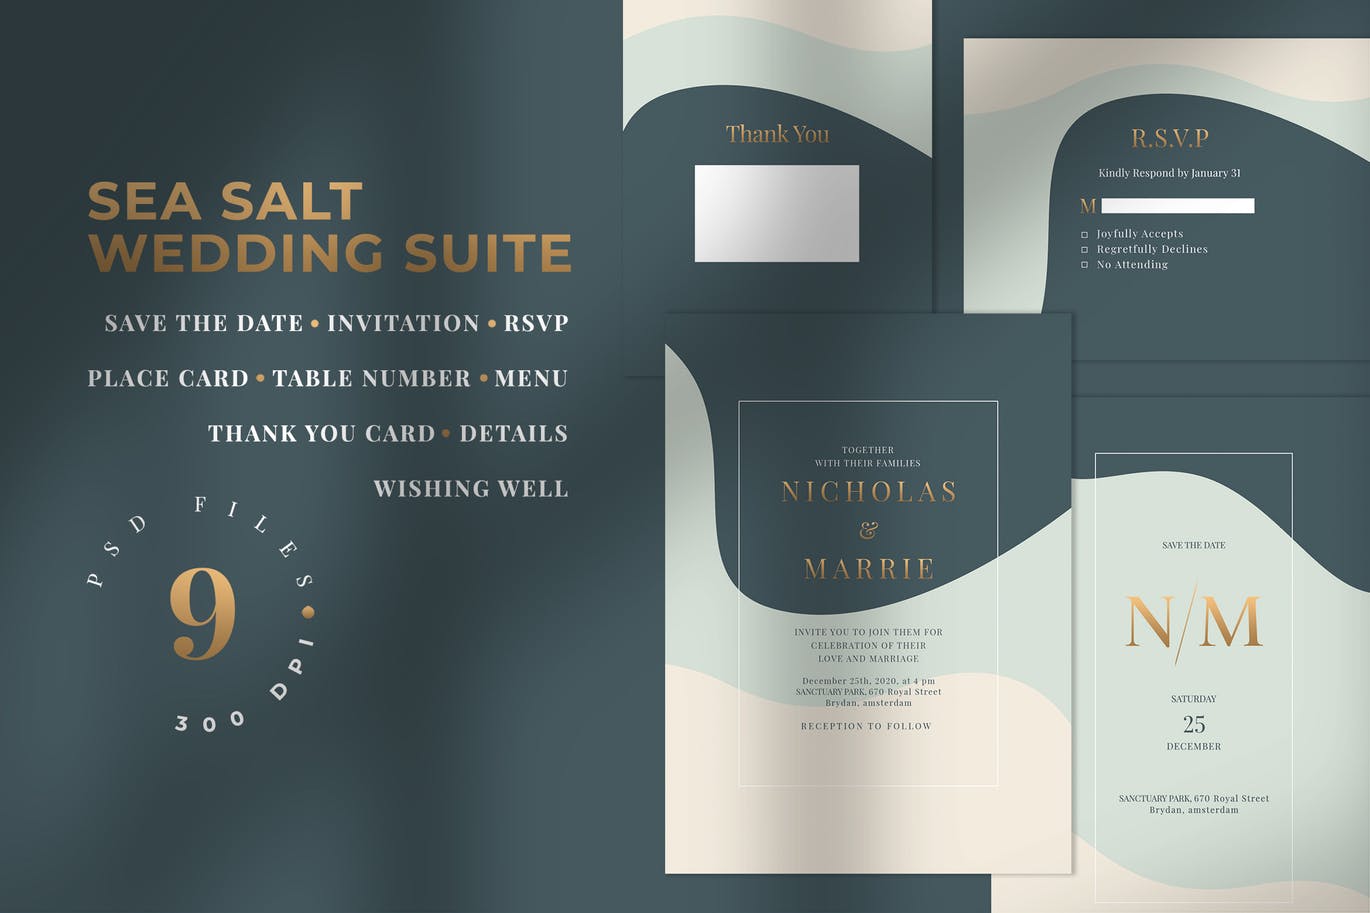 三色背景婚礼邀请设计素材包 SEA SALT – Wedding Invitation Suite插图